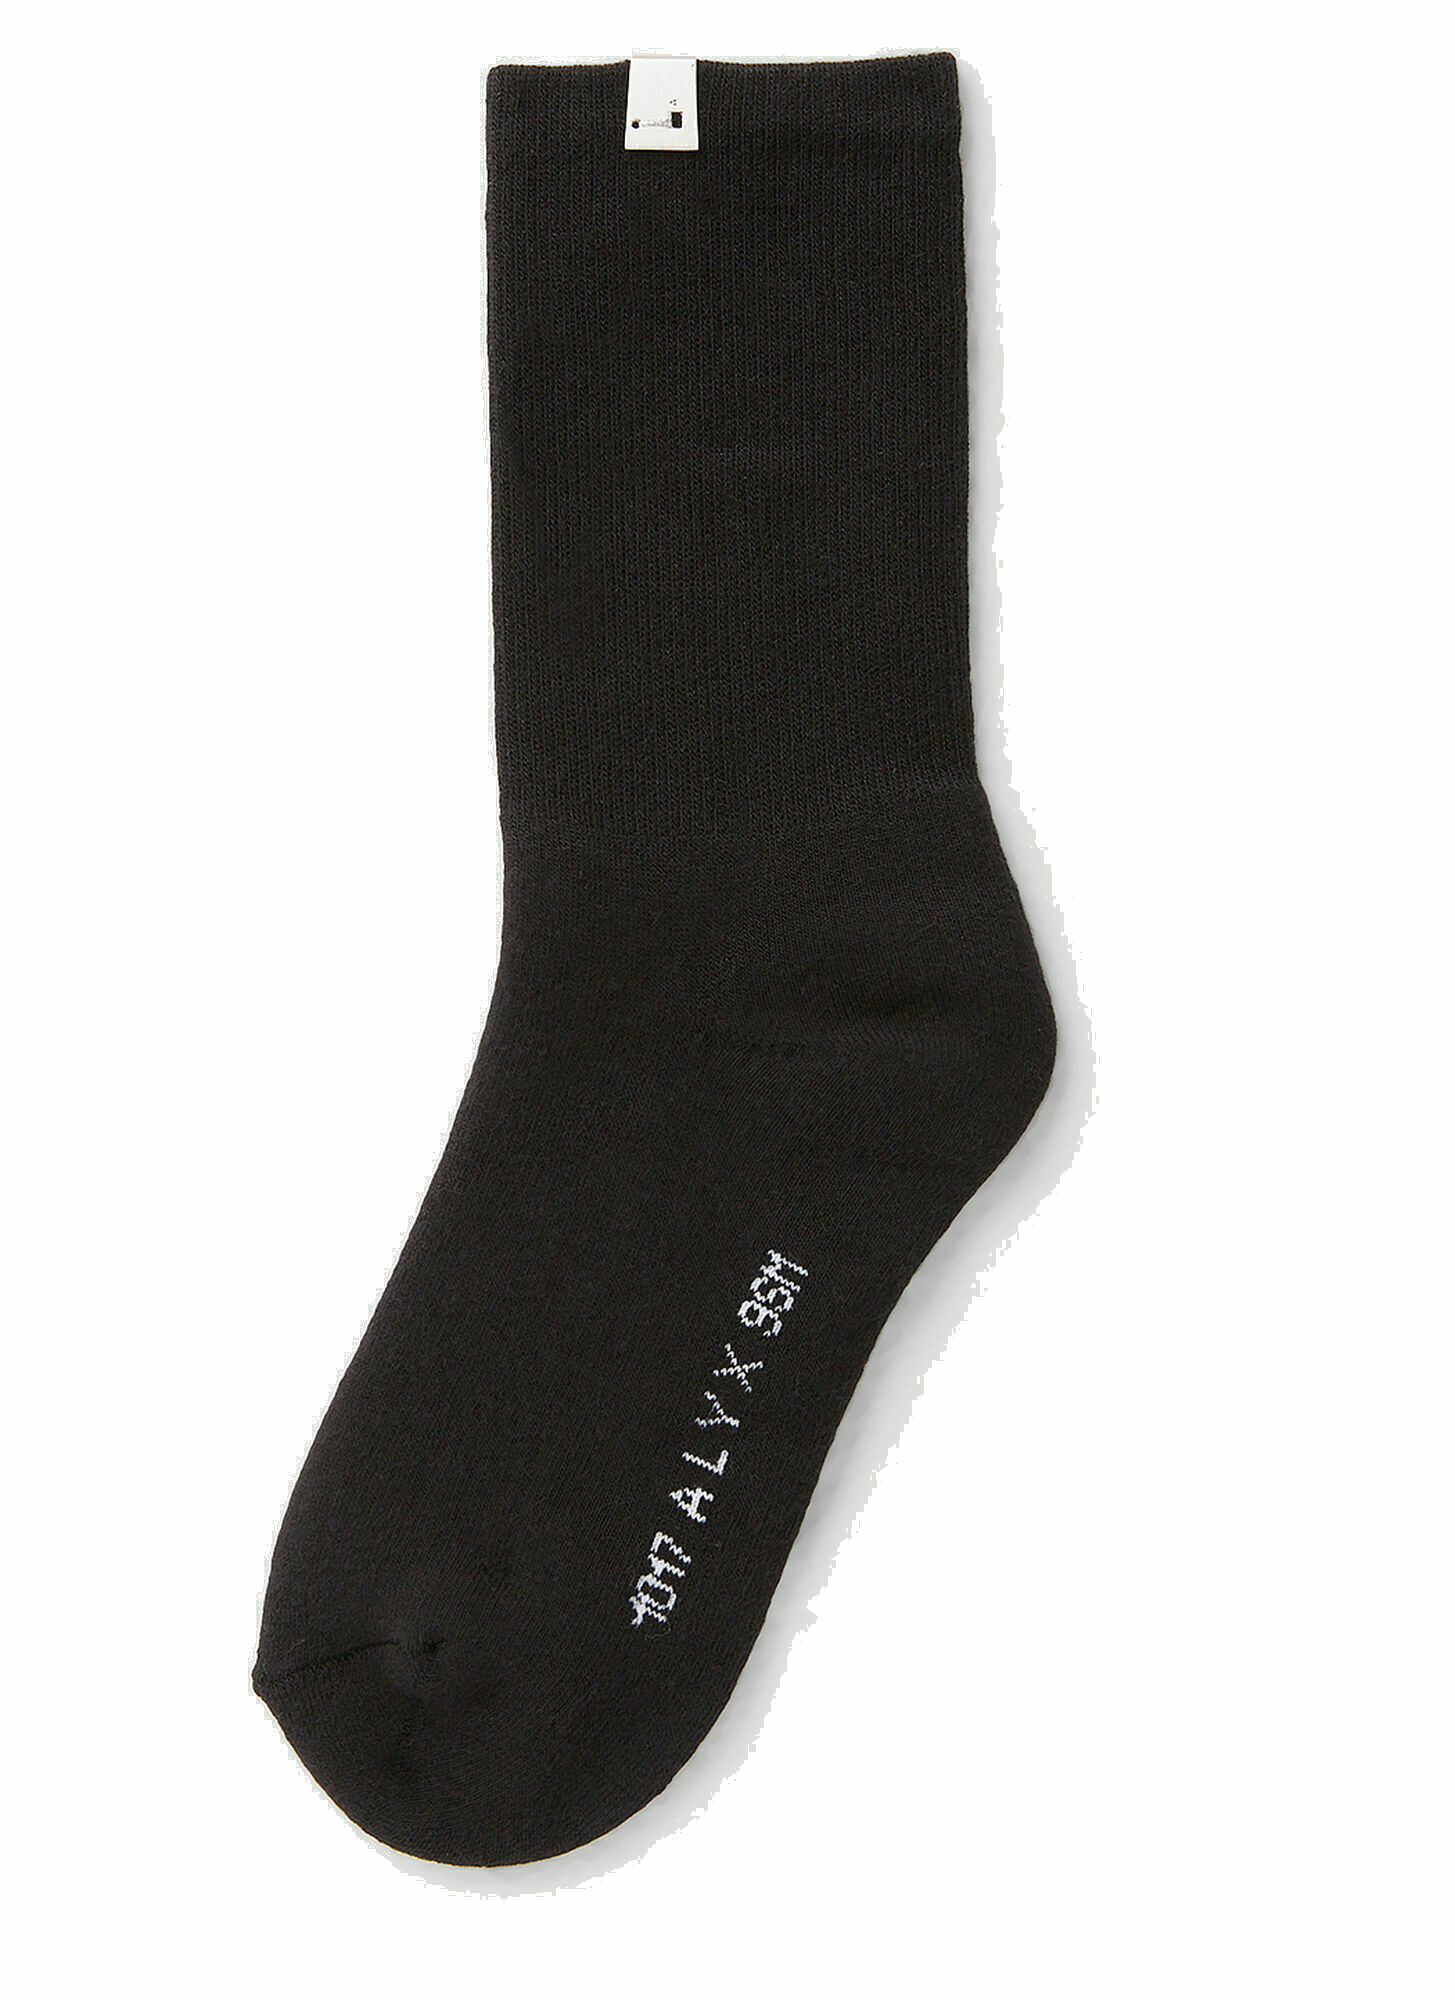 Photo: Lightercap Socks in Black